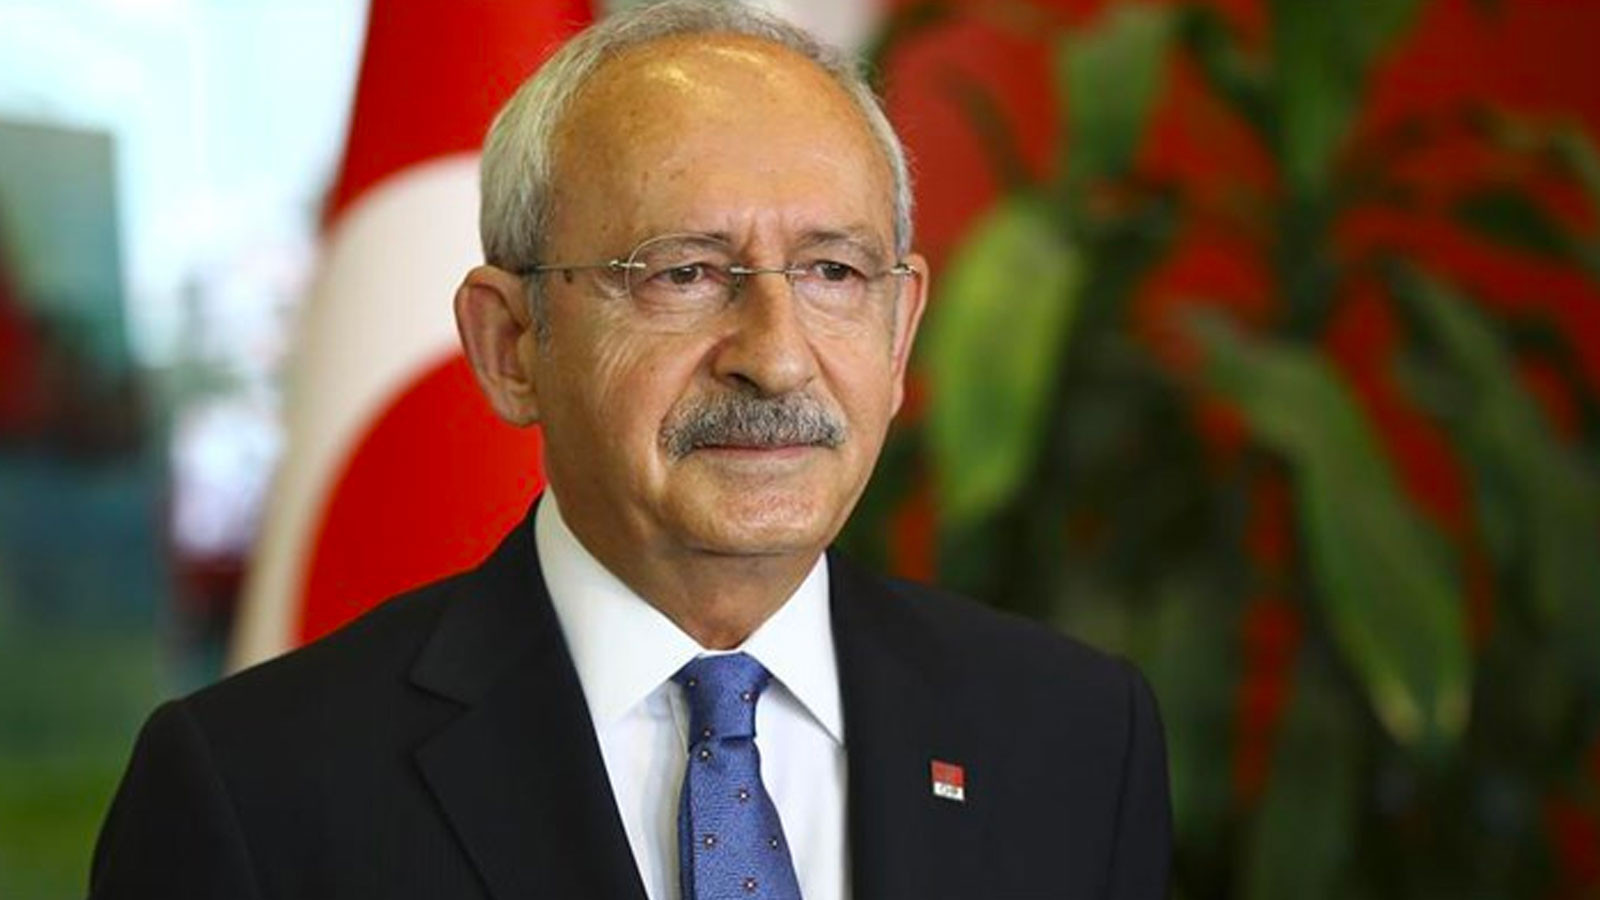 Kılıçdaroğlu, AK Parti'yi Arınç'ın sözleriyle eleştirdi